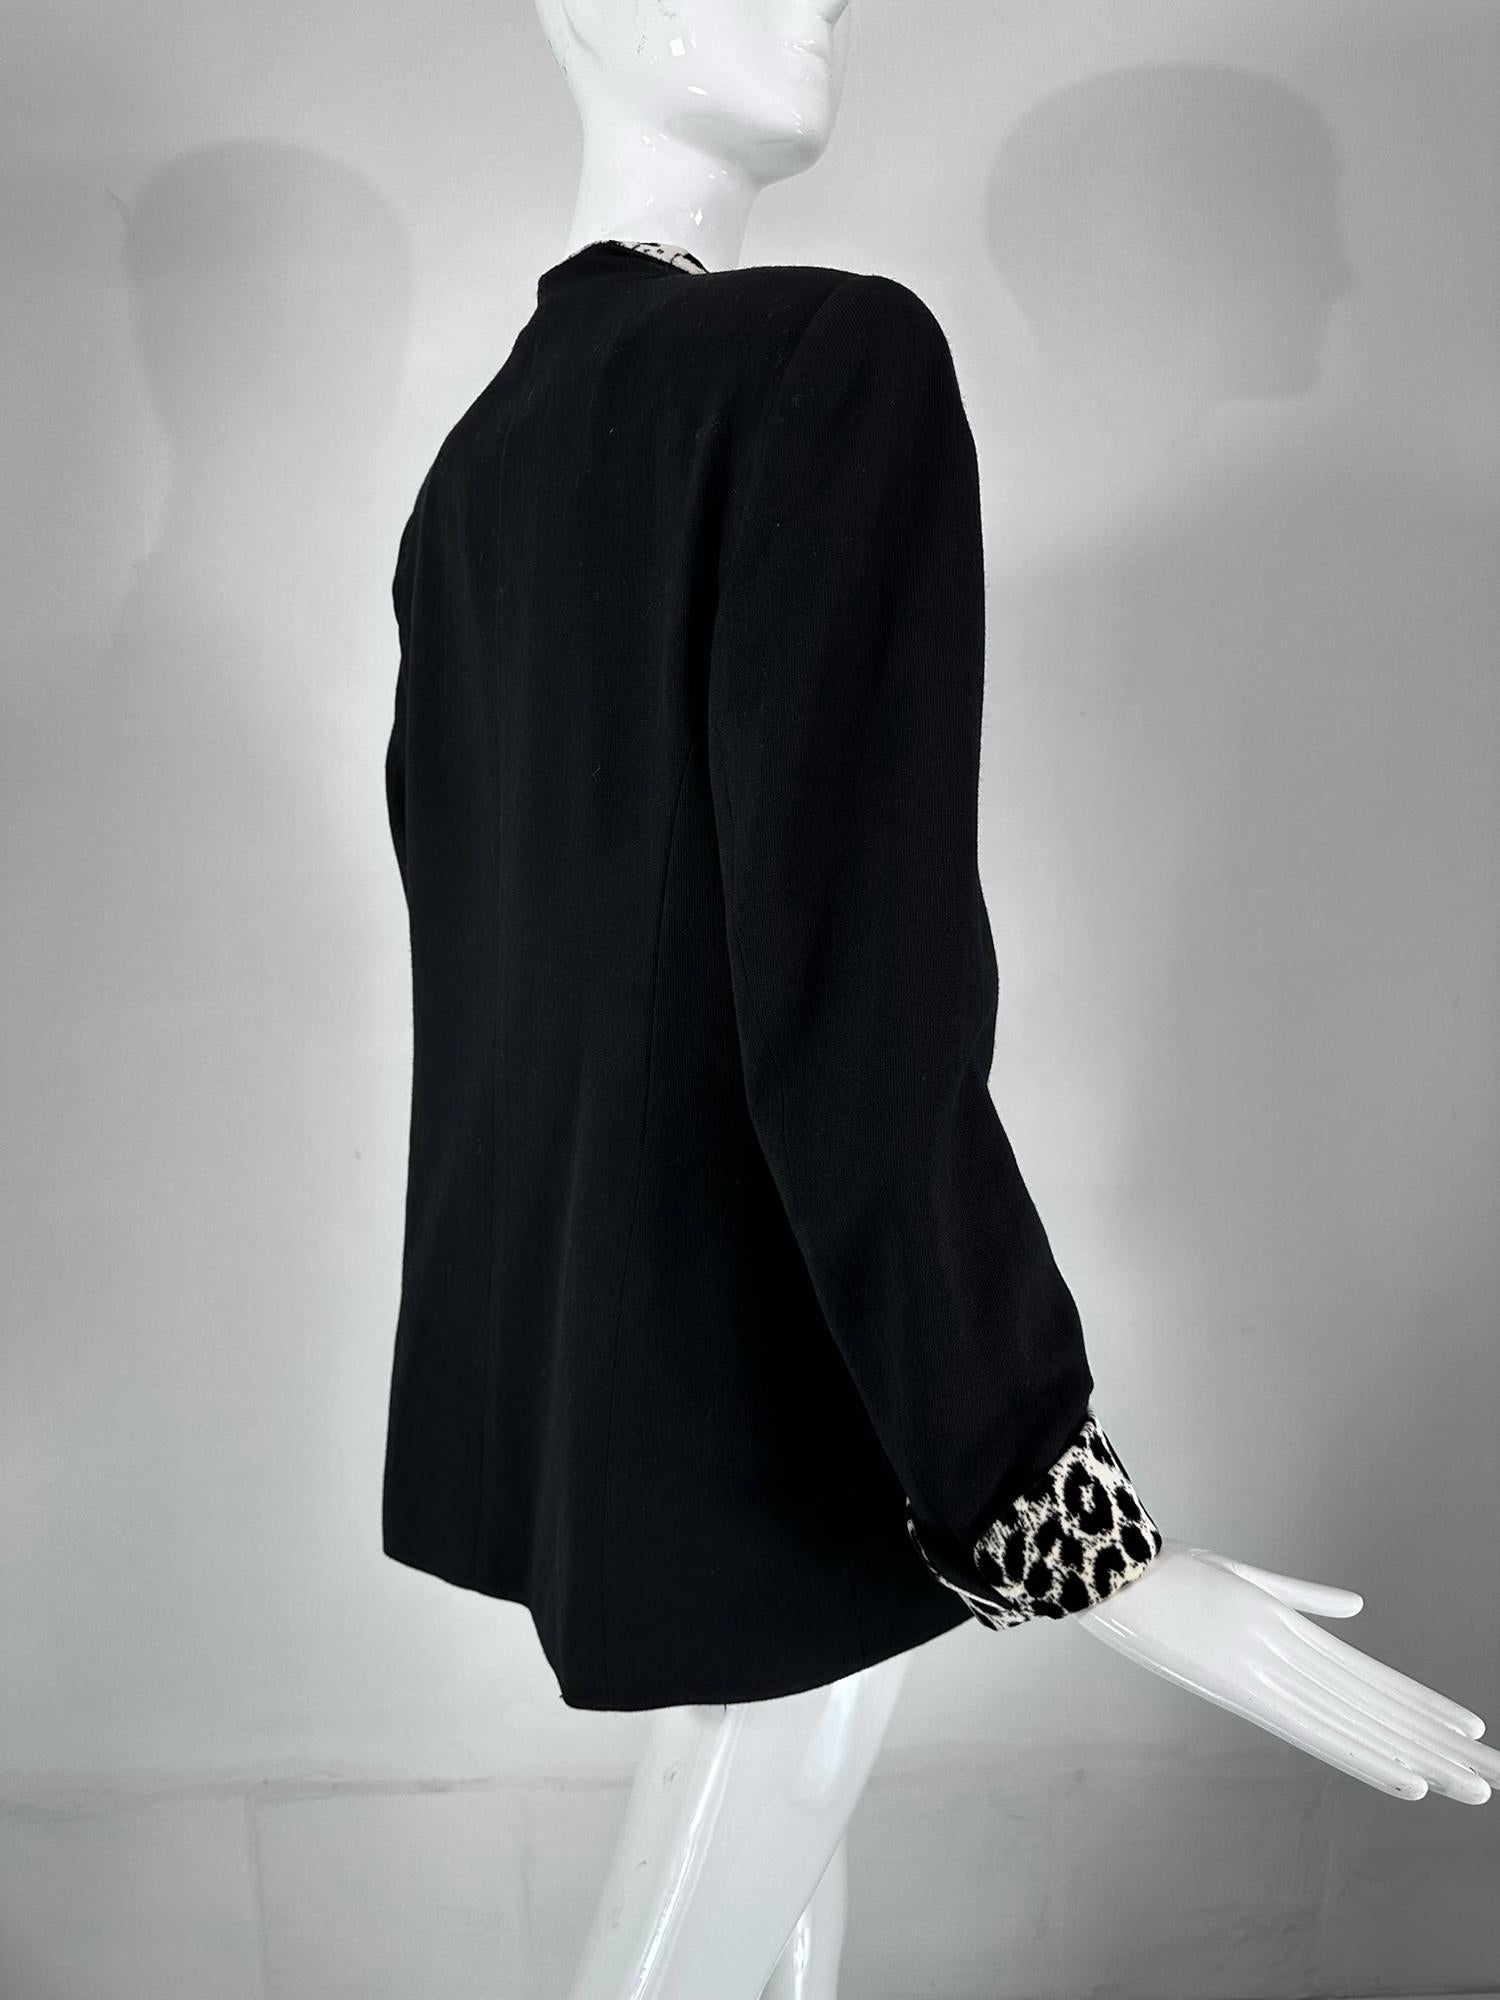 Christian Dior Black Princess Seam Tuxedo Jacket Black White Velvet Lapels 1990s For Sale 1